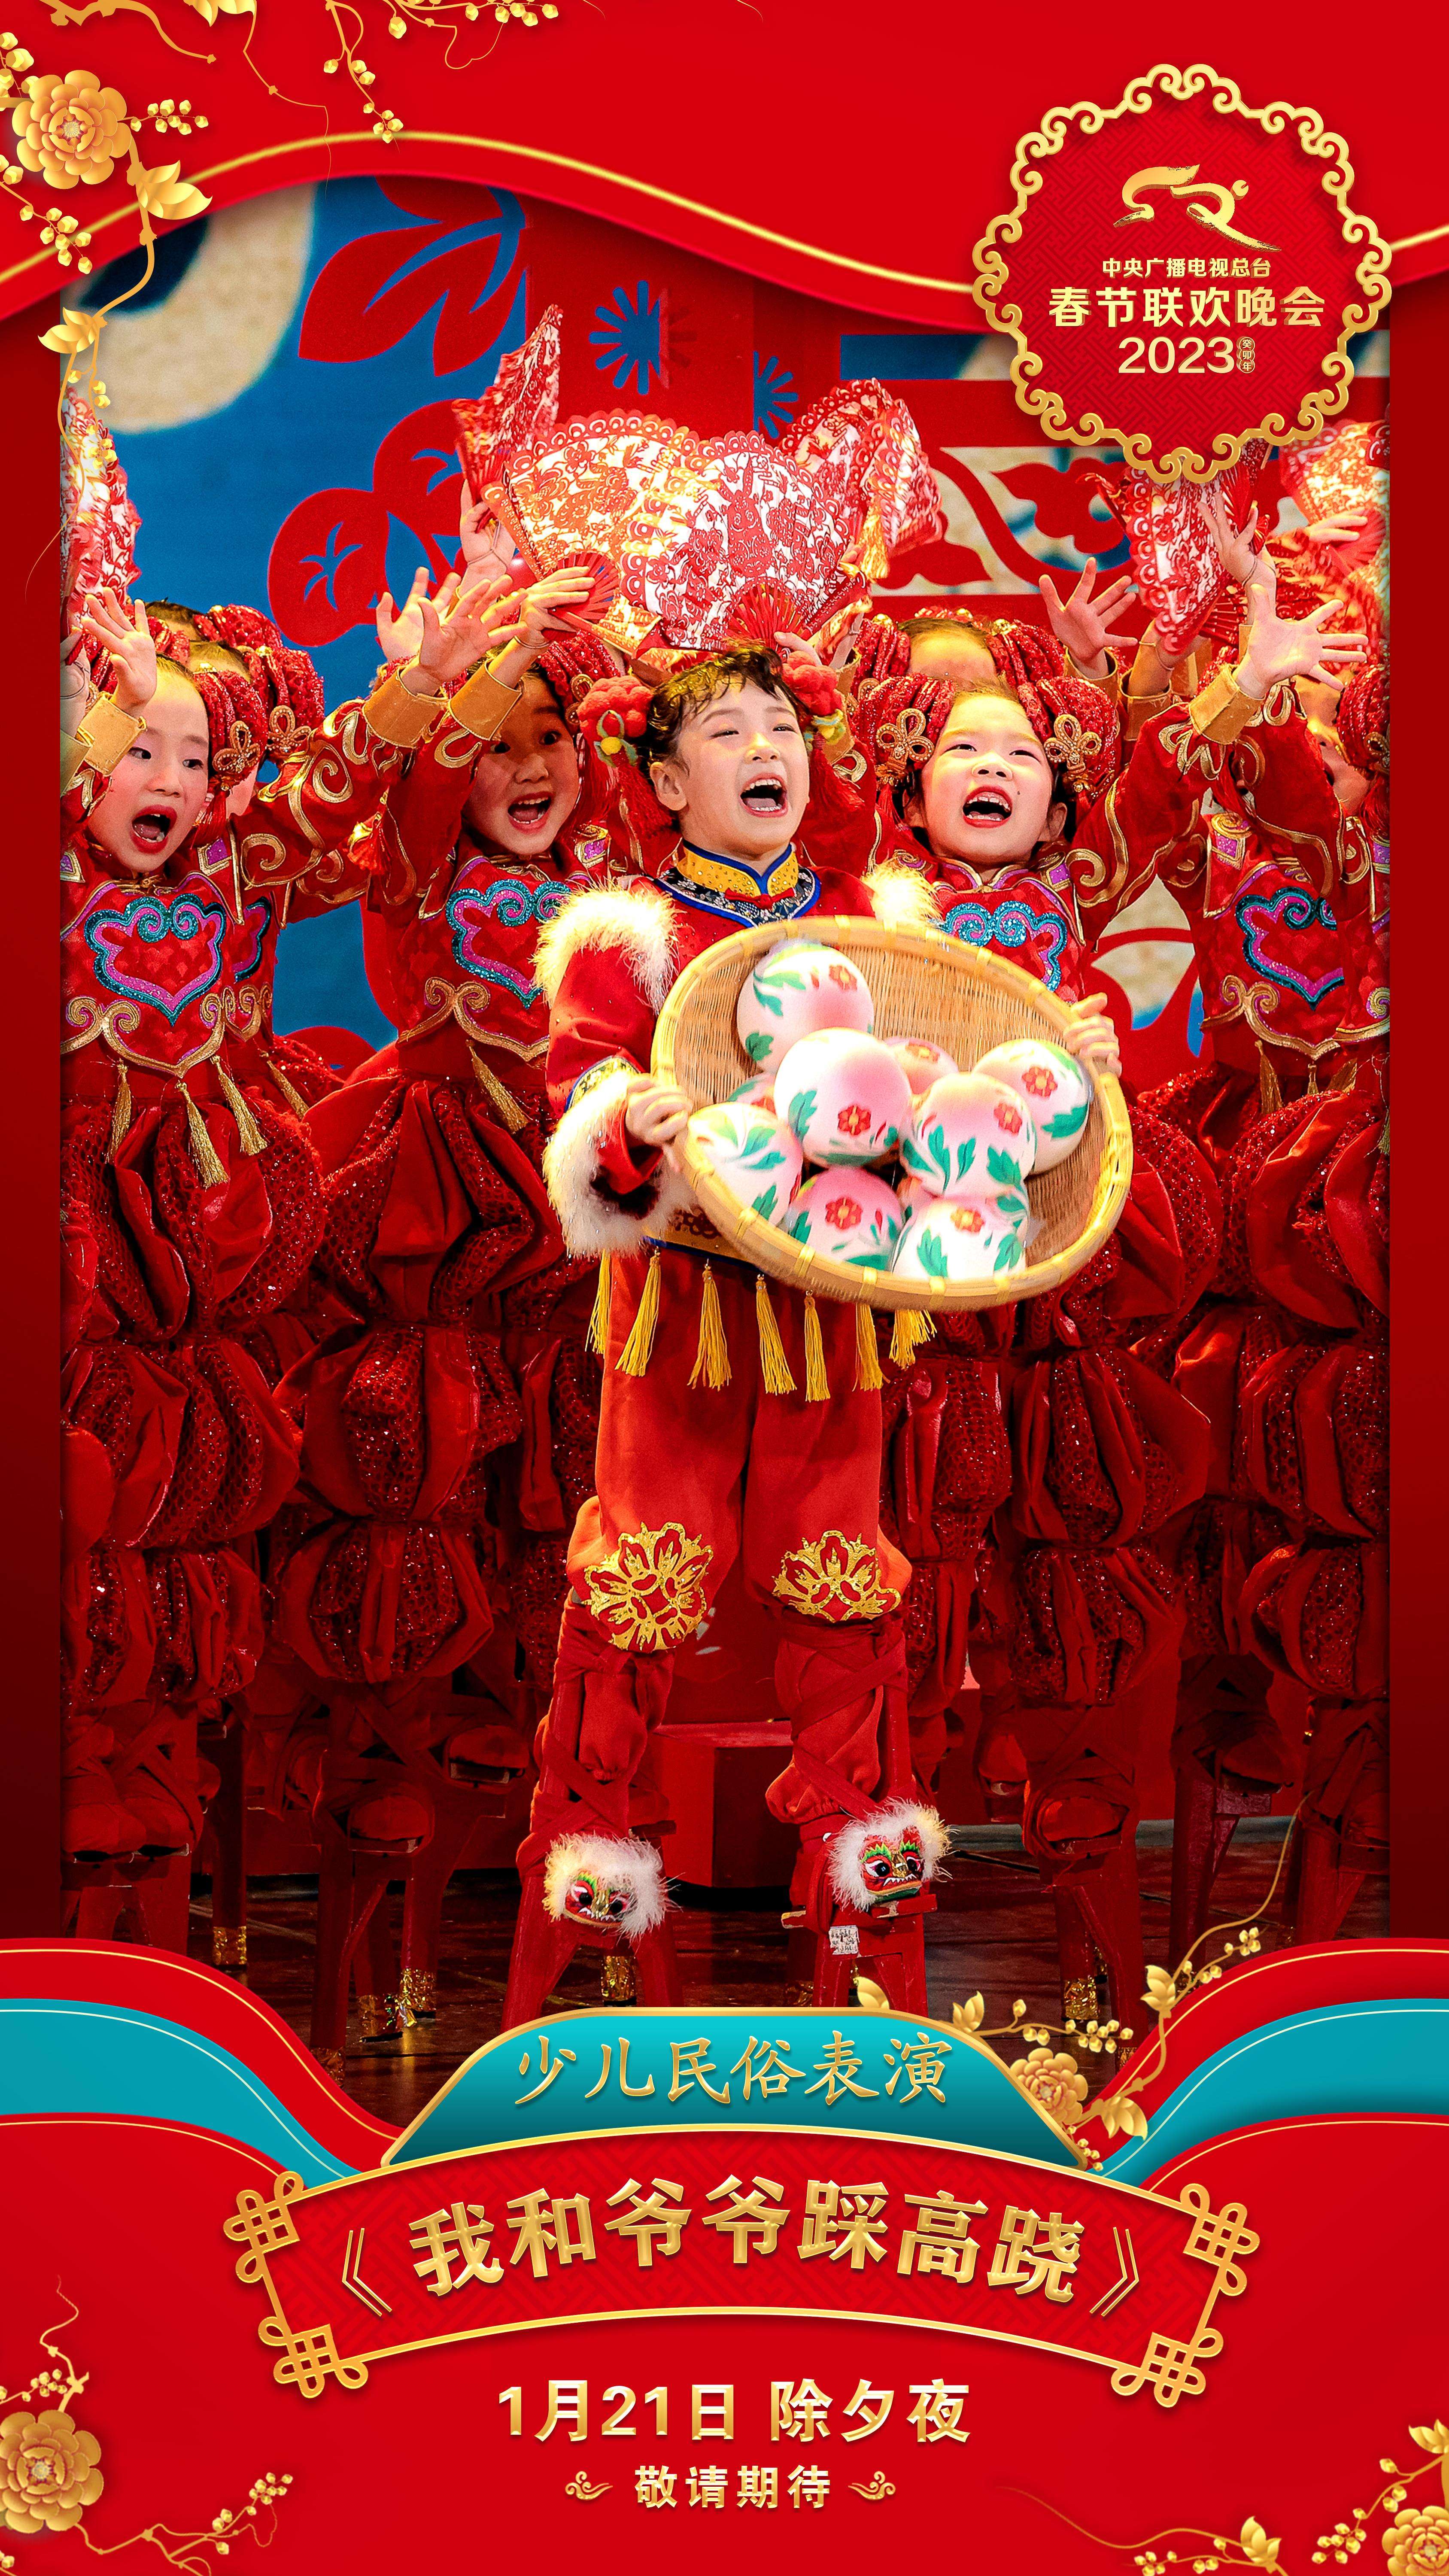 《2023年春节联欢晚会》节目海报发布4.jpg